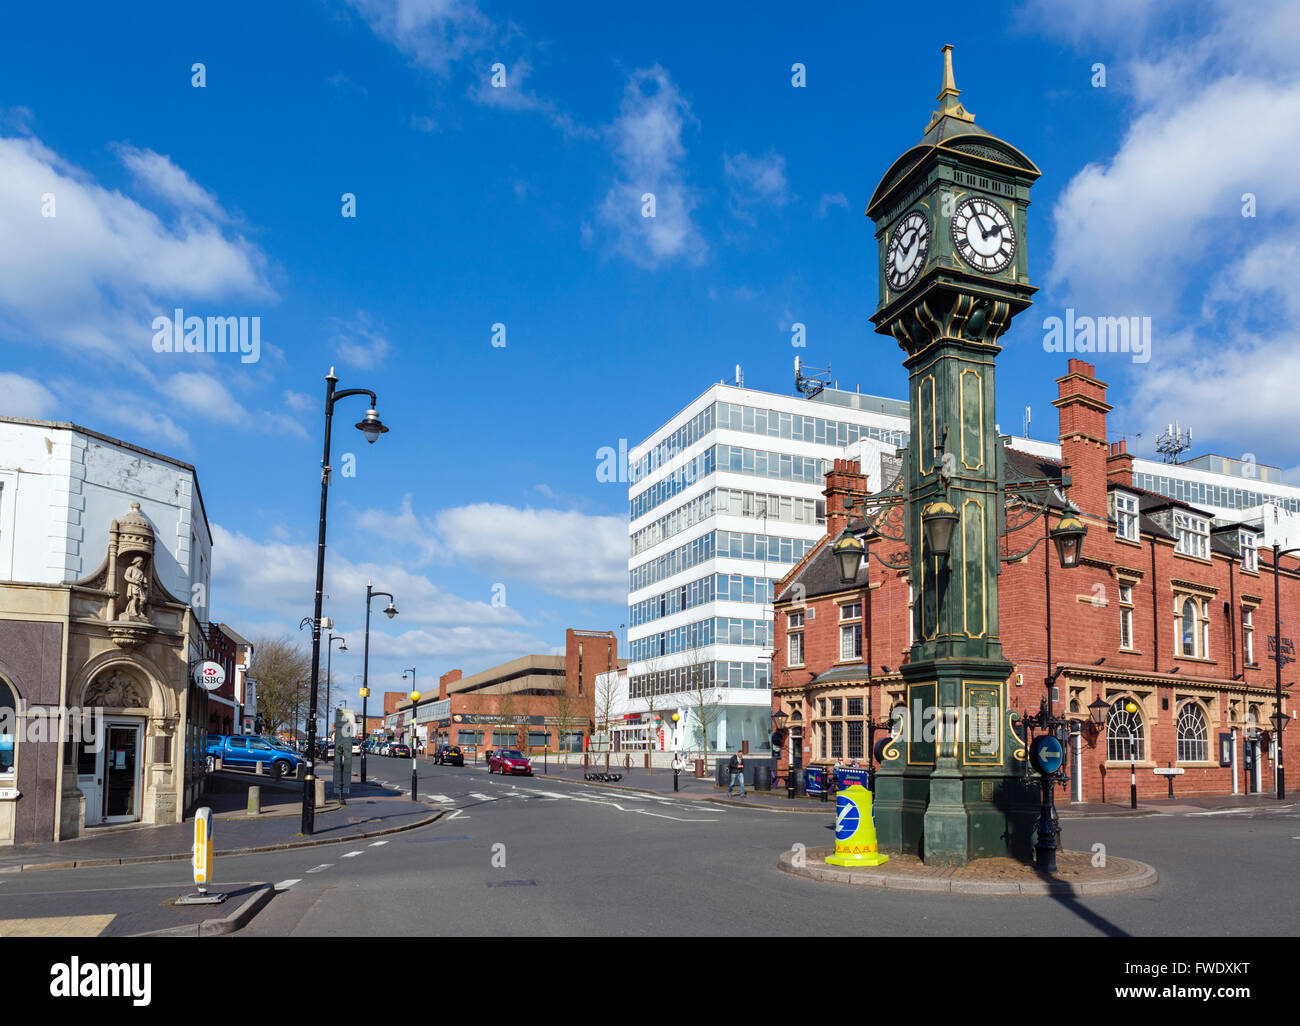 El Chamberlain de reloj en el centro del barrio de las Joyerías, Birmingham, West Midlands, Inglaterra, Reino Unido. Foto de stock